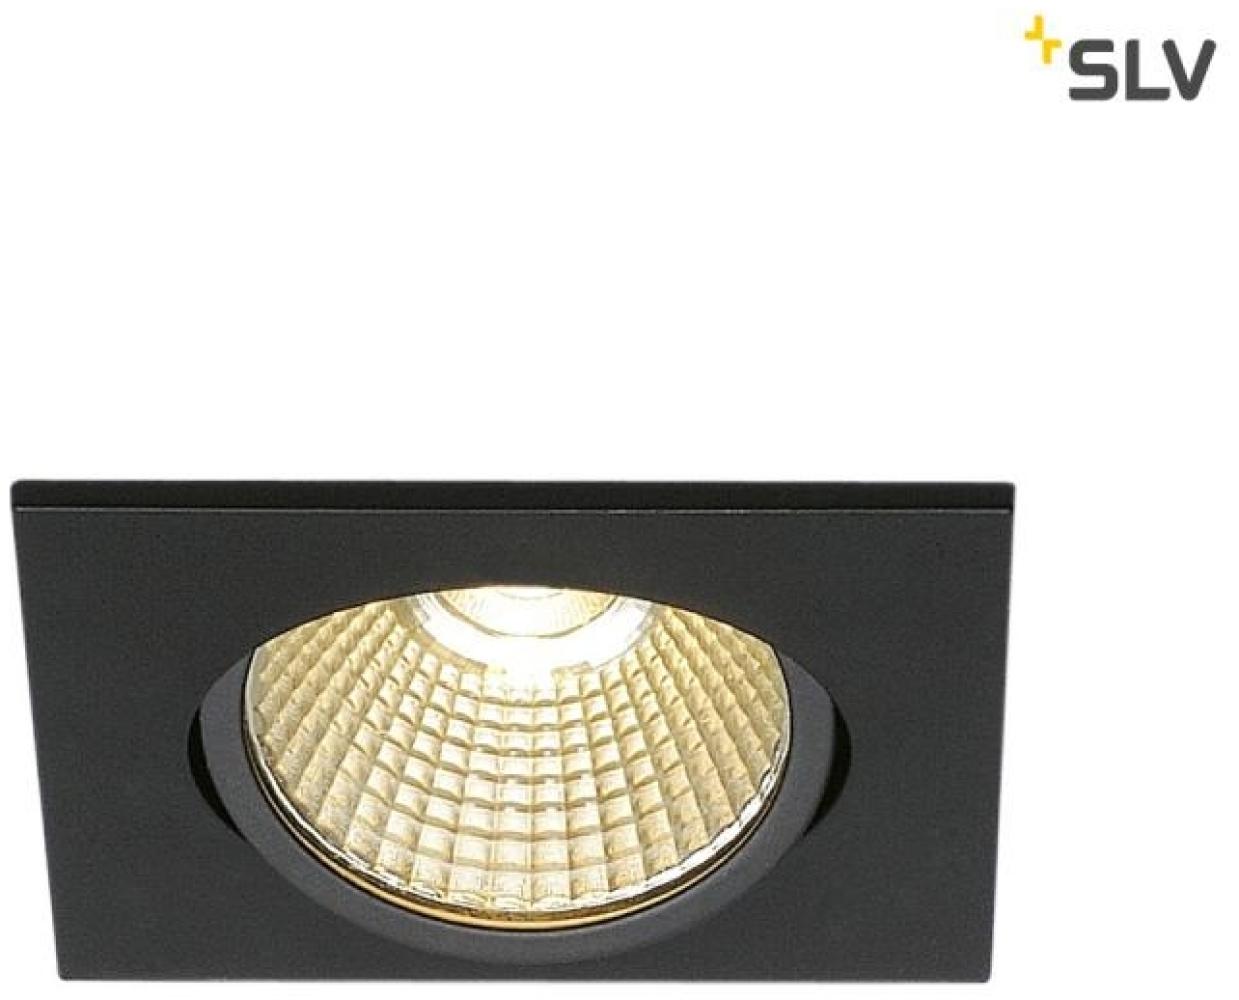 SLV No. 1001991 NEW TRIA eckig LED Indoor Deckeneinbauleuchte schwarz 1800-3000K 7,2W Bild 1